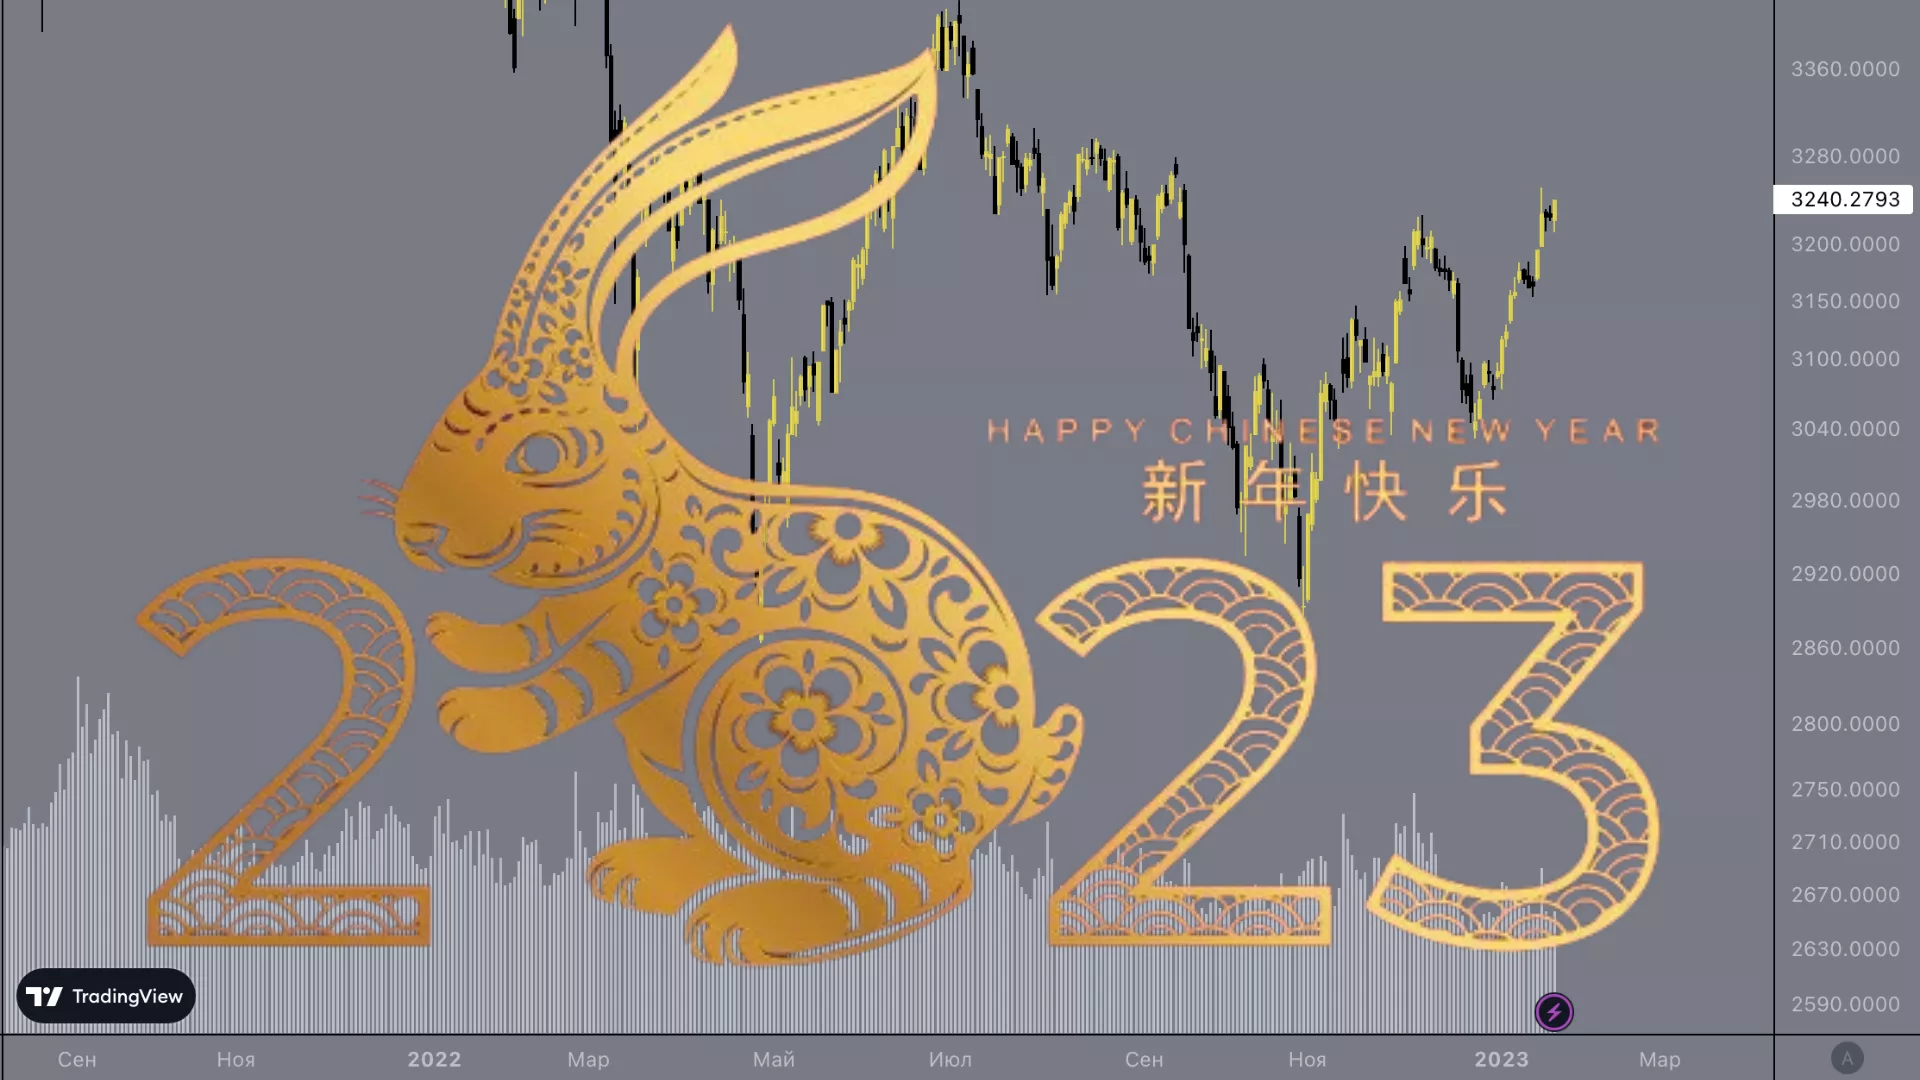 Bulls on Chinese stocks 2023